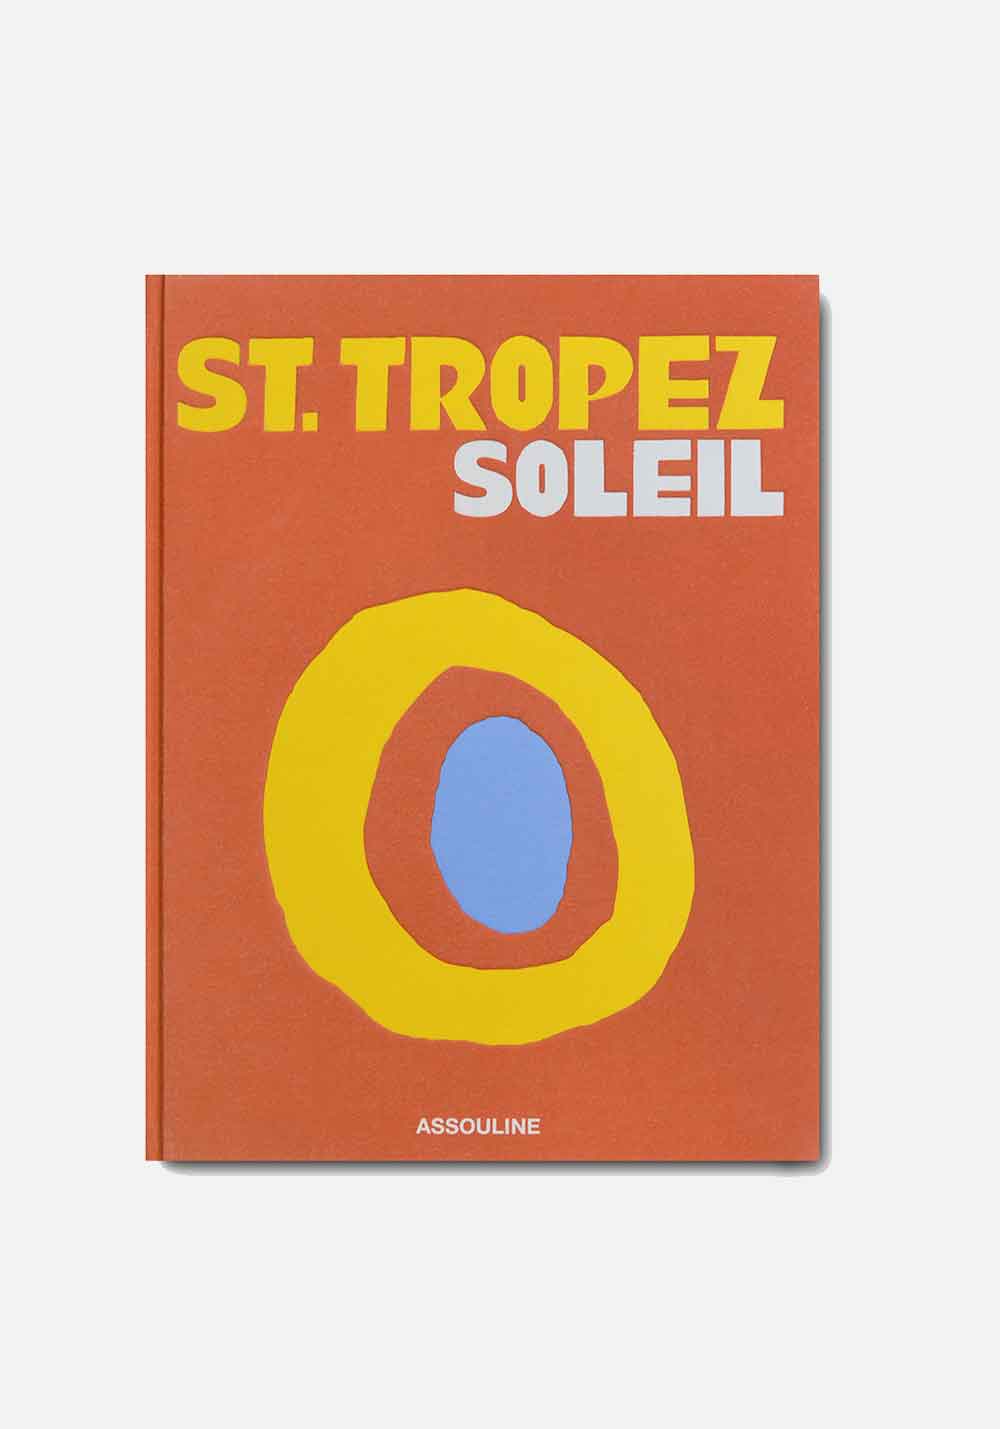 ST. TROPEZ SOLEIL